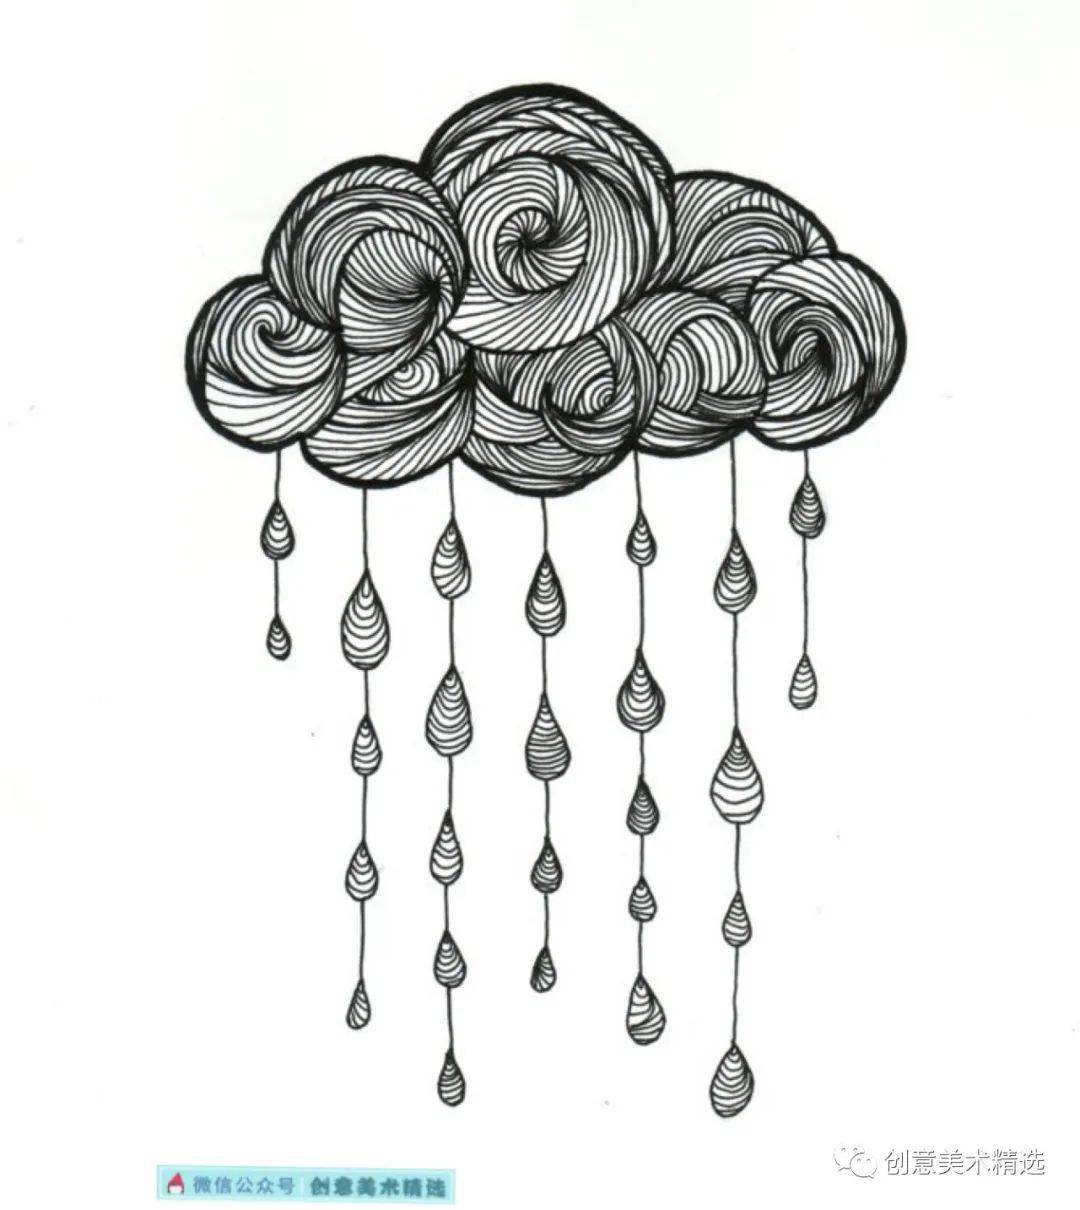 小清新线描装饰画风中有朵雨做的云